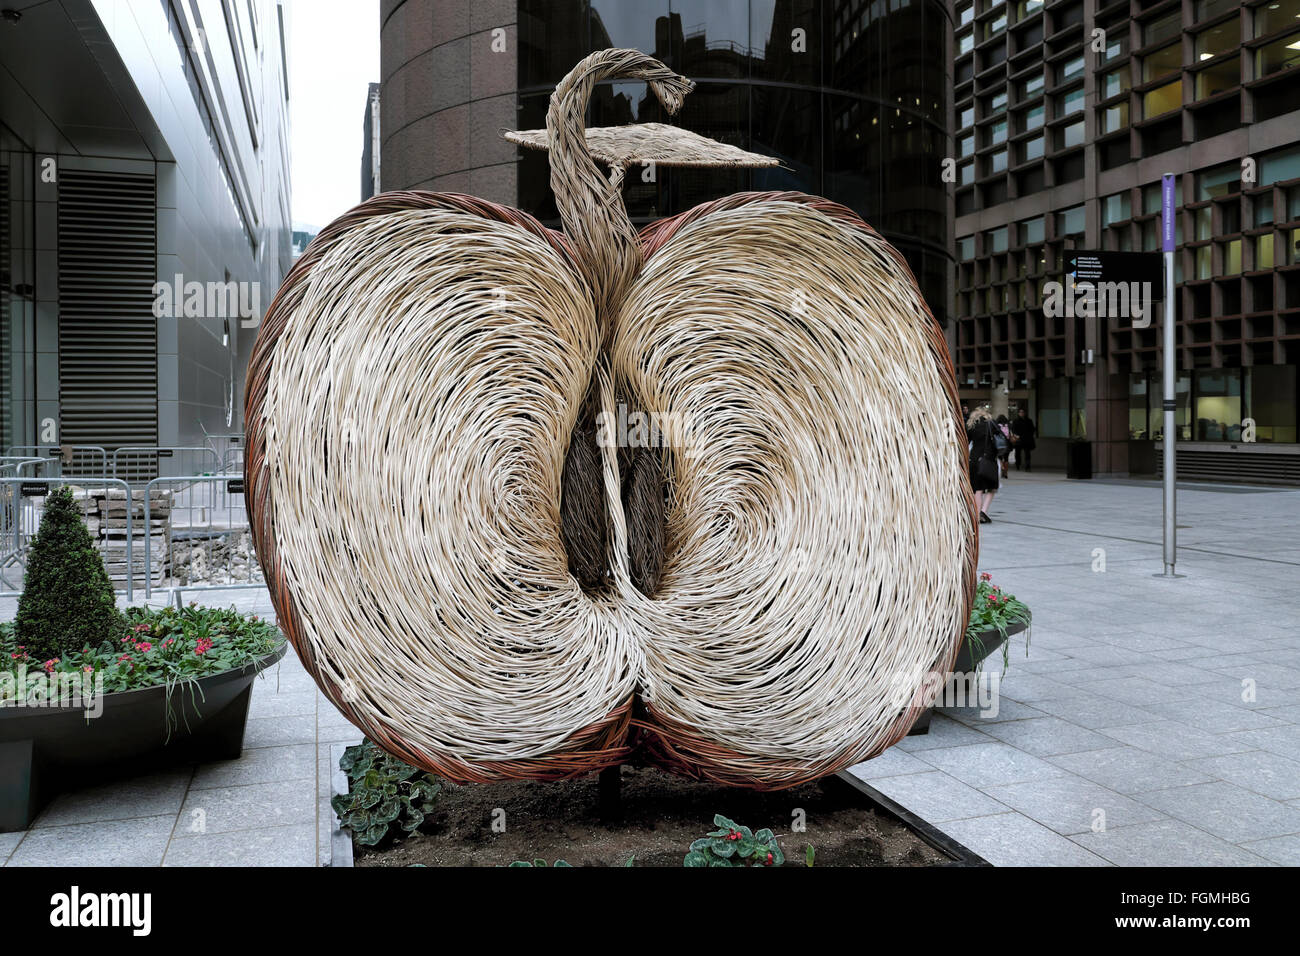 Tissé par Apple willow sculpture artiste Tom Hare à Broadgate London Angleterre UK 2016 KATHY DEWITT Banque D'Images